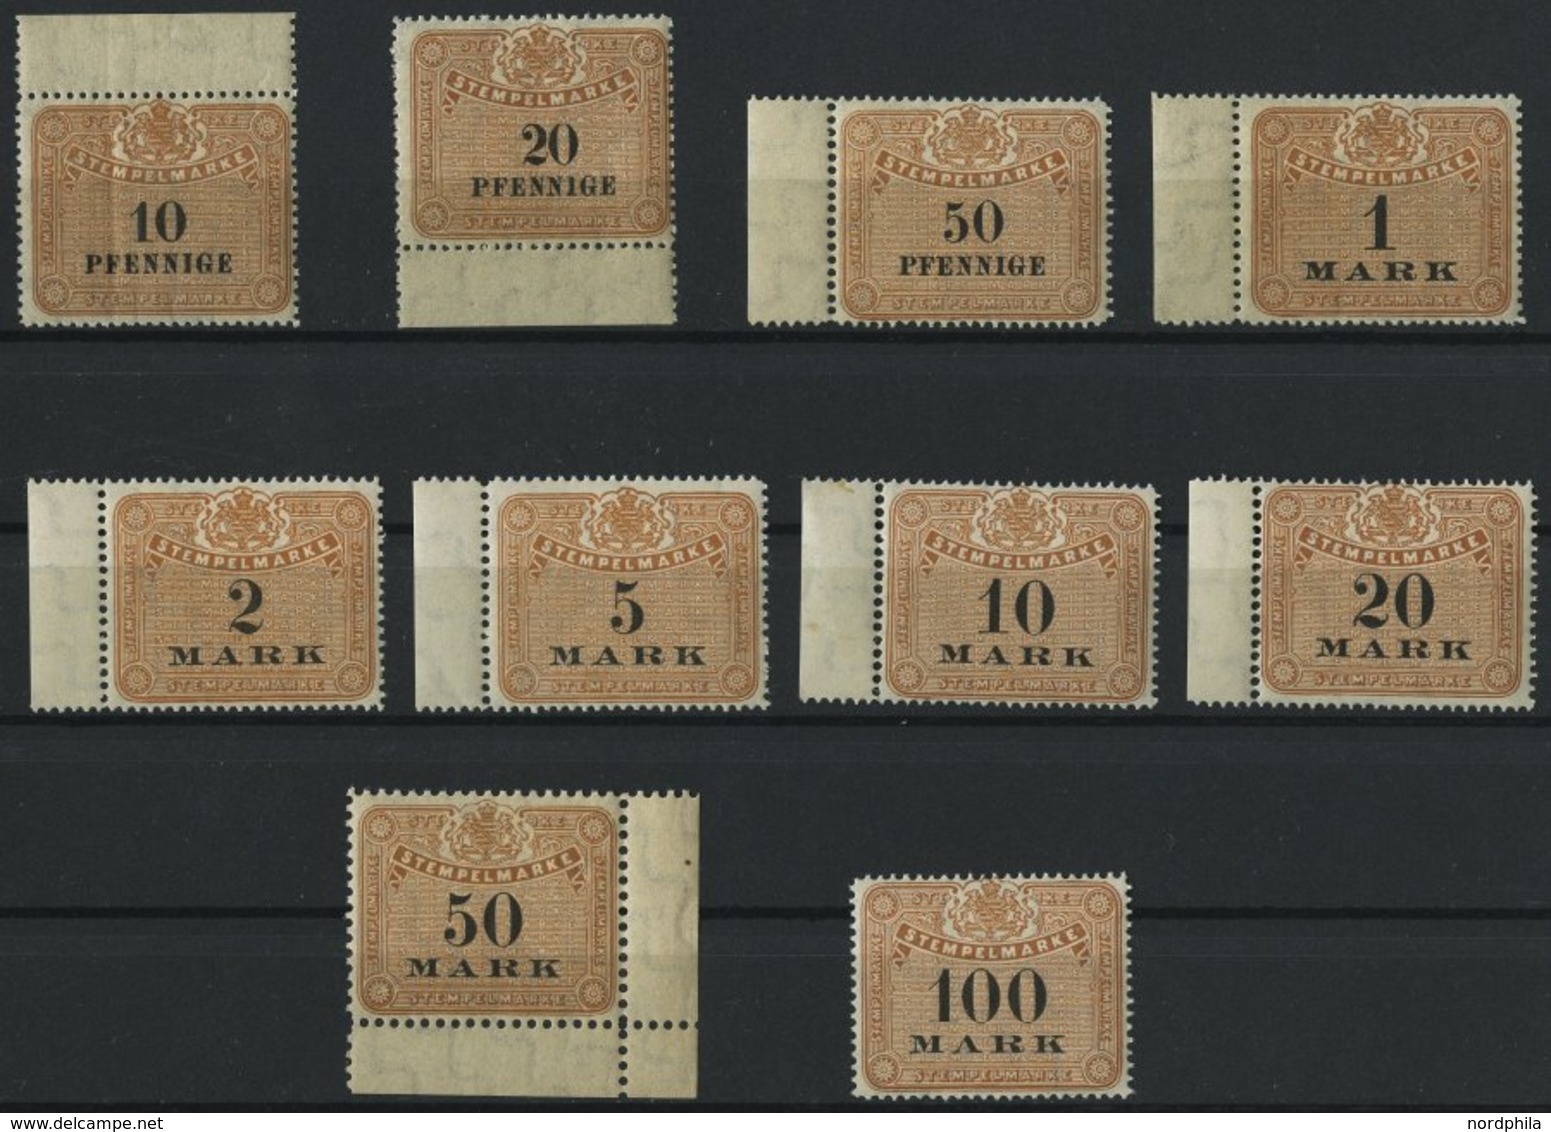 SACHSEN **, 1910, 10 Pf. - 100 Mk. Stempelmarken, Wz. Treppen, 10 Werte Postfrisch, Pracht - Saxe